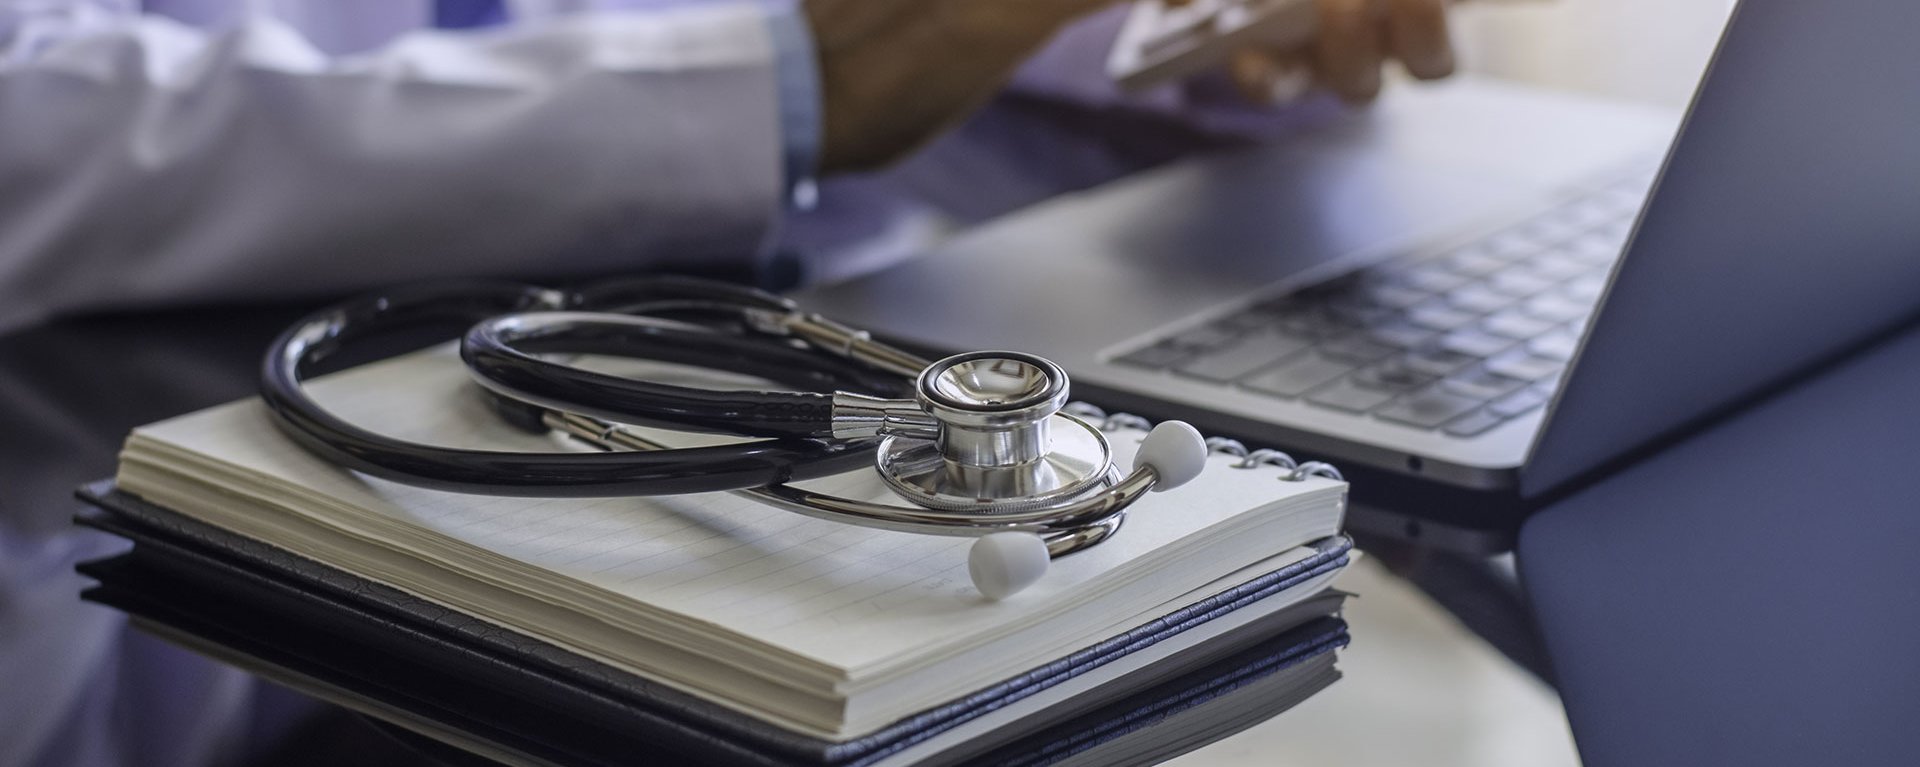 Ärztin des Klinikverbunds Allgäu sitzt mit Taschenrechner und mit medizinischem Stethoskop und Notizbuch auf dem Schreibtisch am Laptop und Arbeitet.